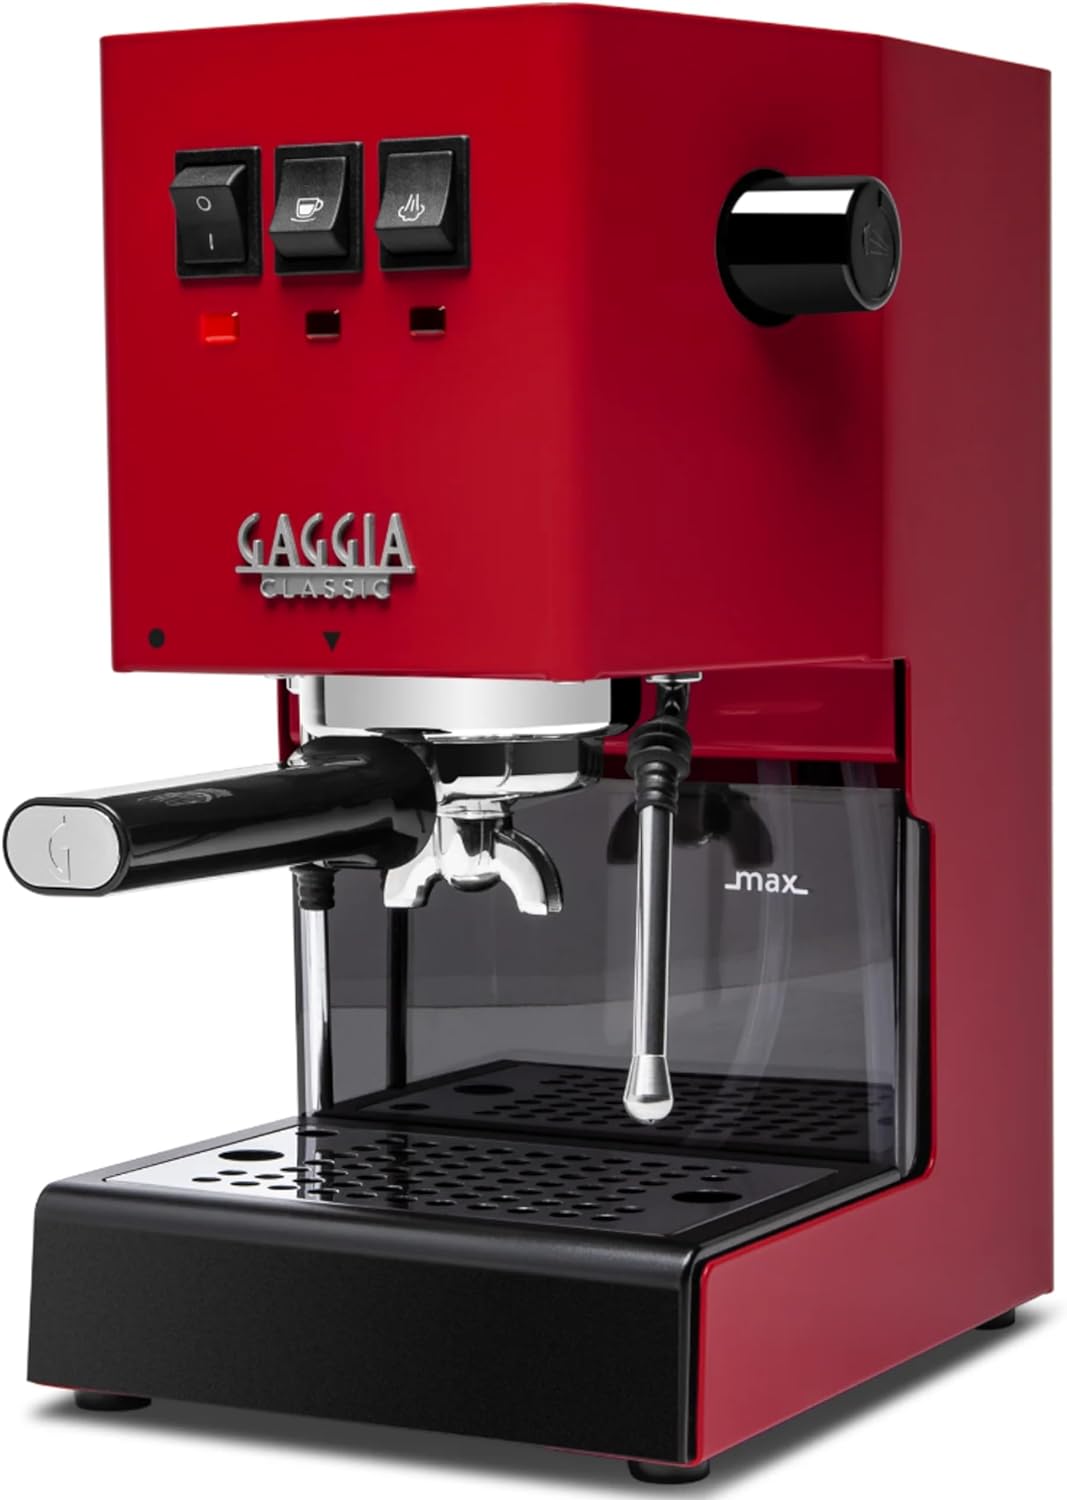 Modified Gaggia Classic Pro Evo w/ Upgrade Kit for Brew, Steam, & Flow –  Sungaze Coffee